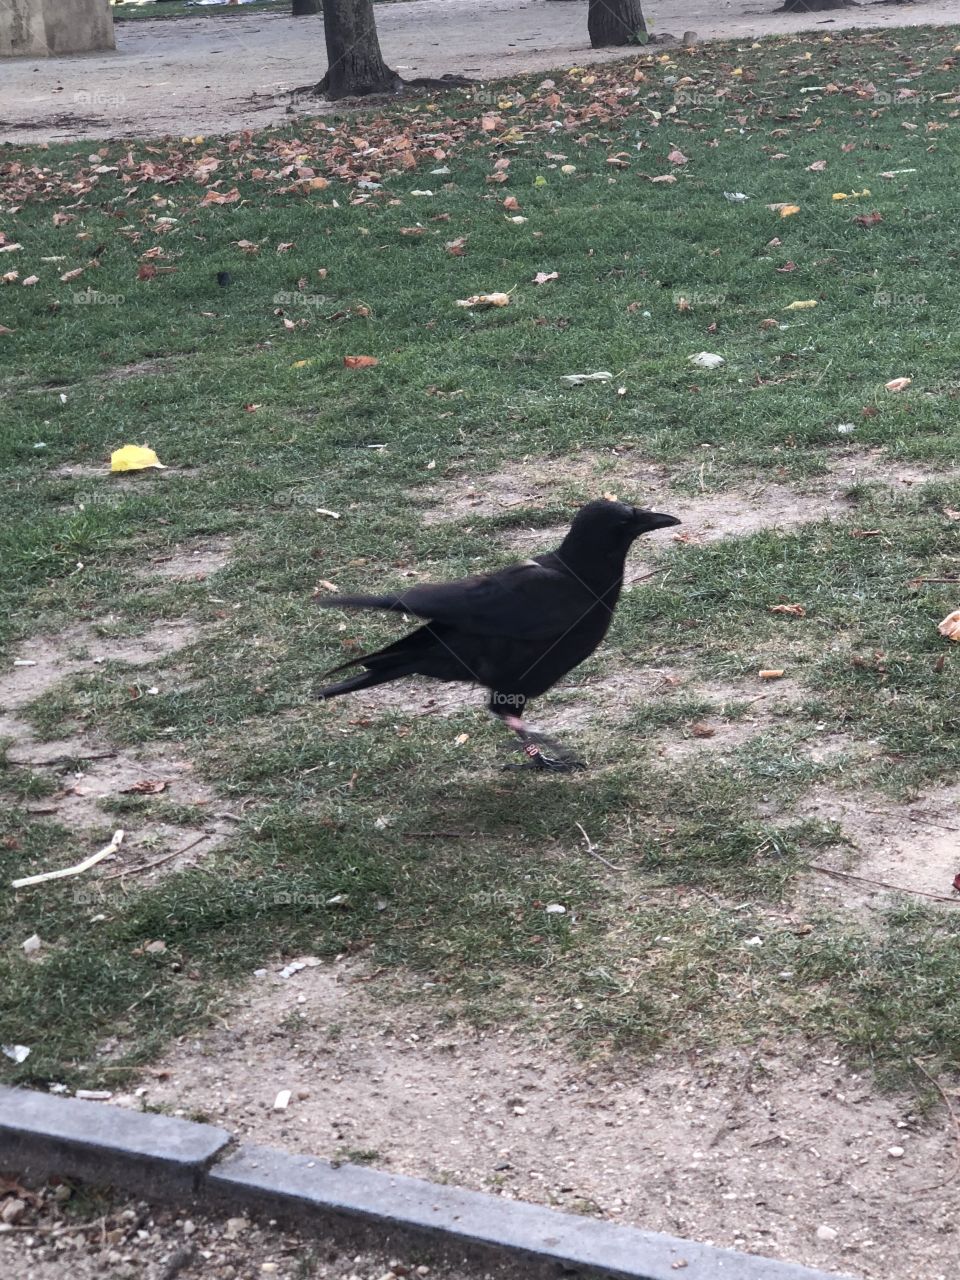 Dark crow